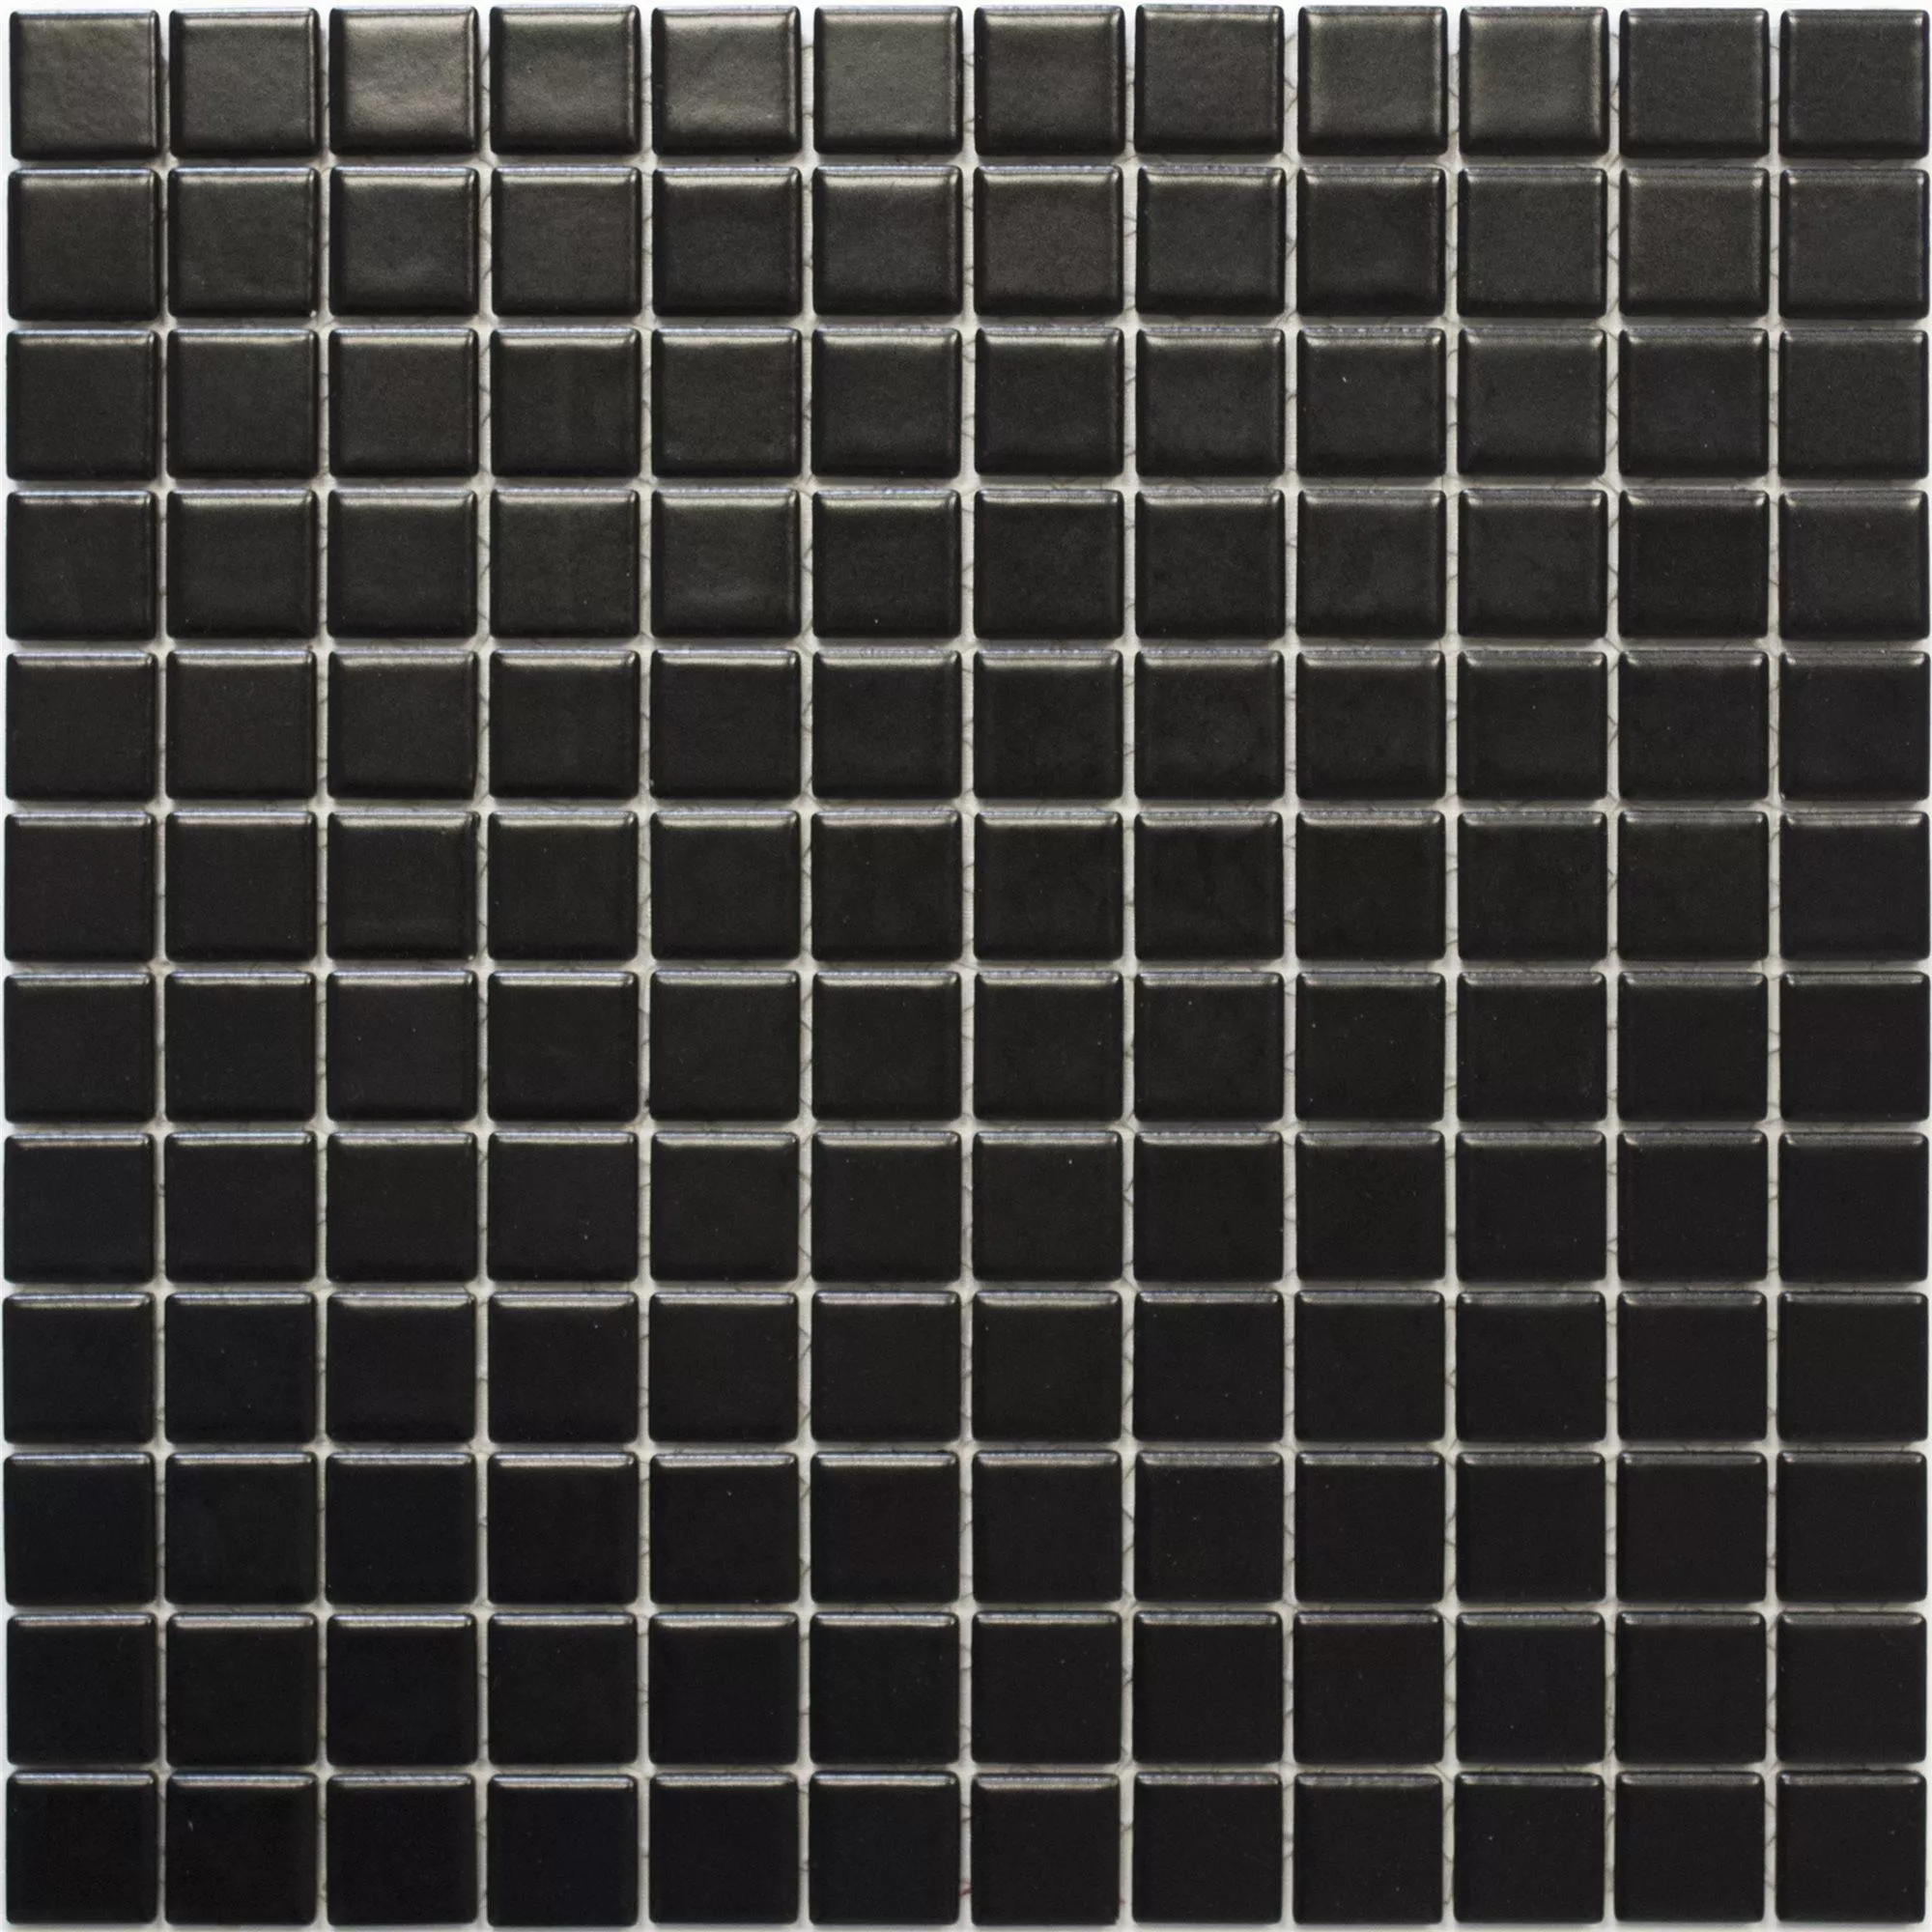 Ceramic Mosaic Tiles Adrian Black Mat Square 23